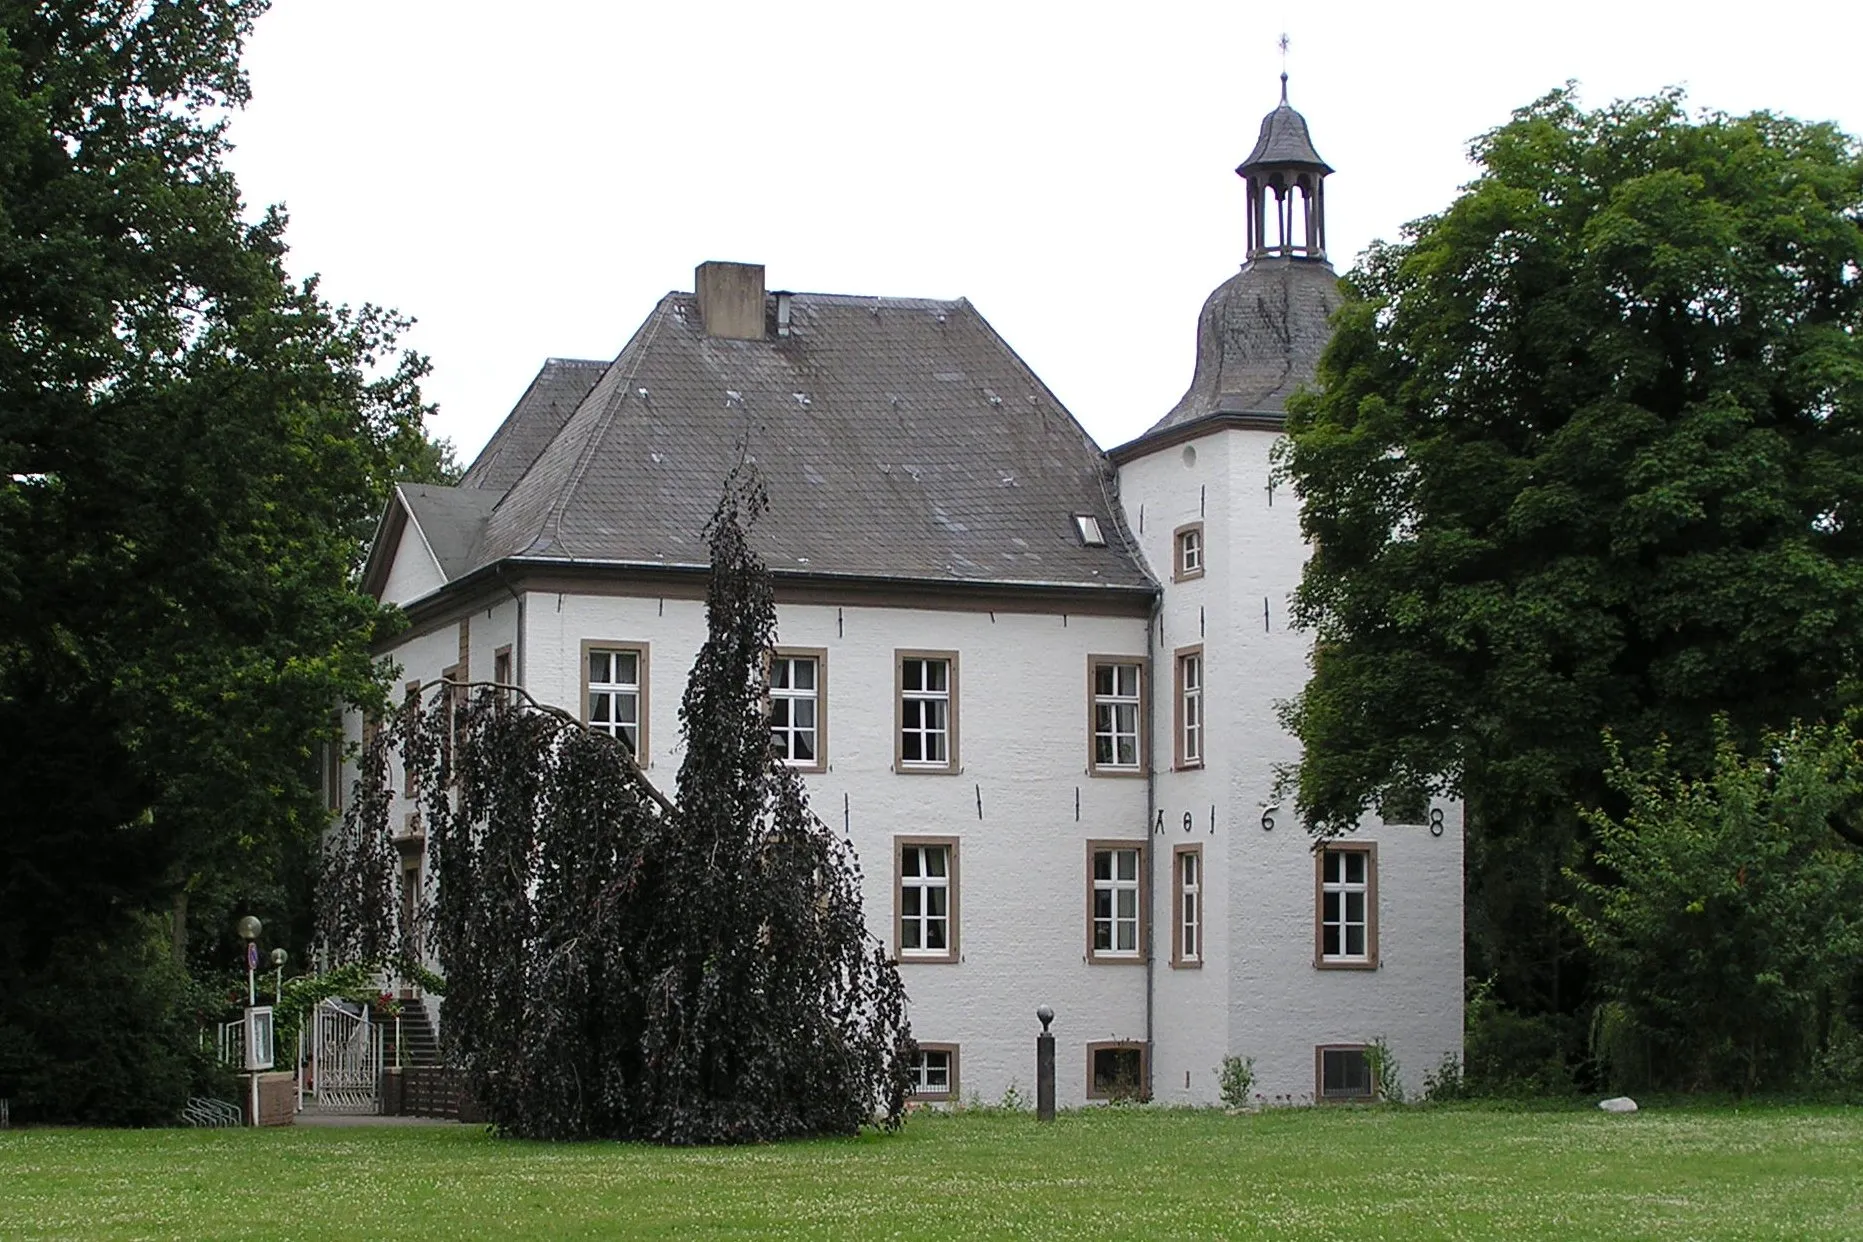 Photo showing: "Haus Voerde" in Voerde, Germany